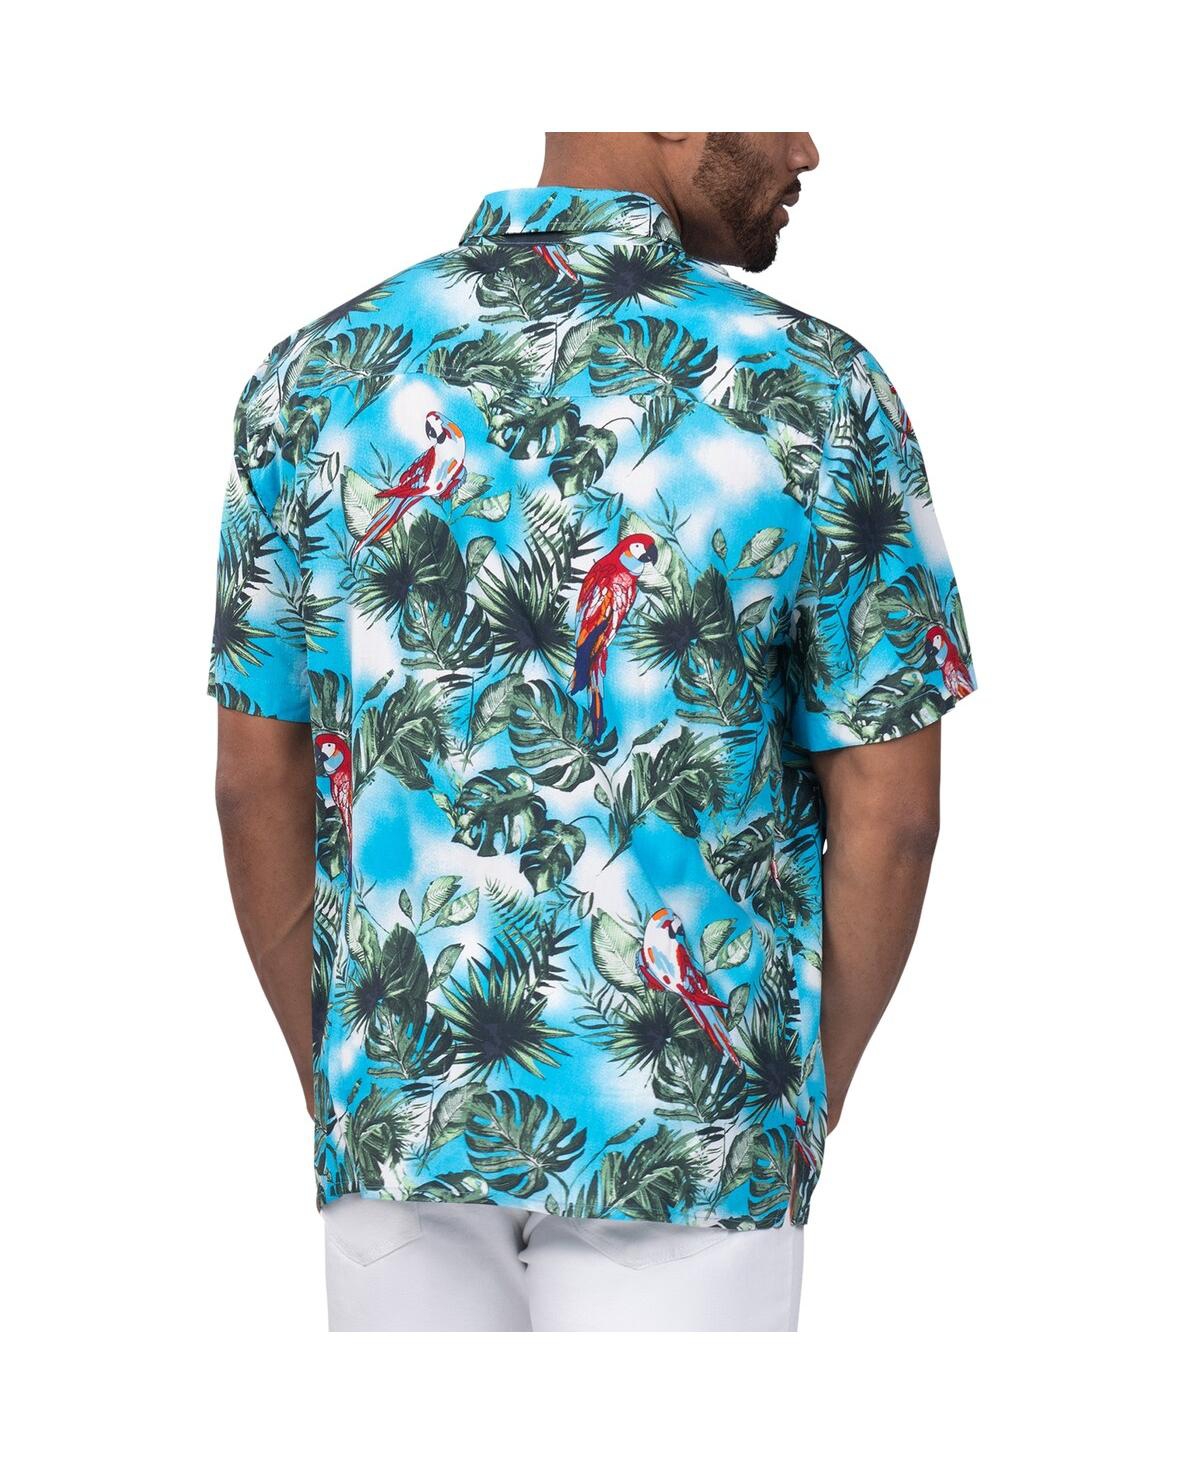 Shop Margaritaville Men's  Light Blue Chase Elliott Jungle Parrot Party Button-up Shirt